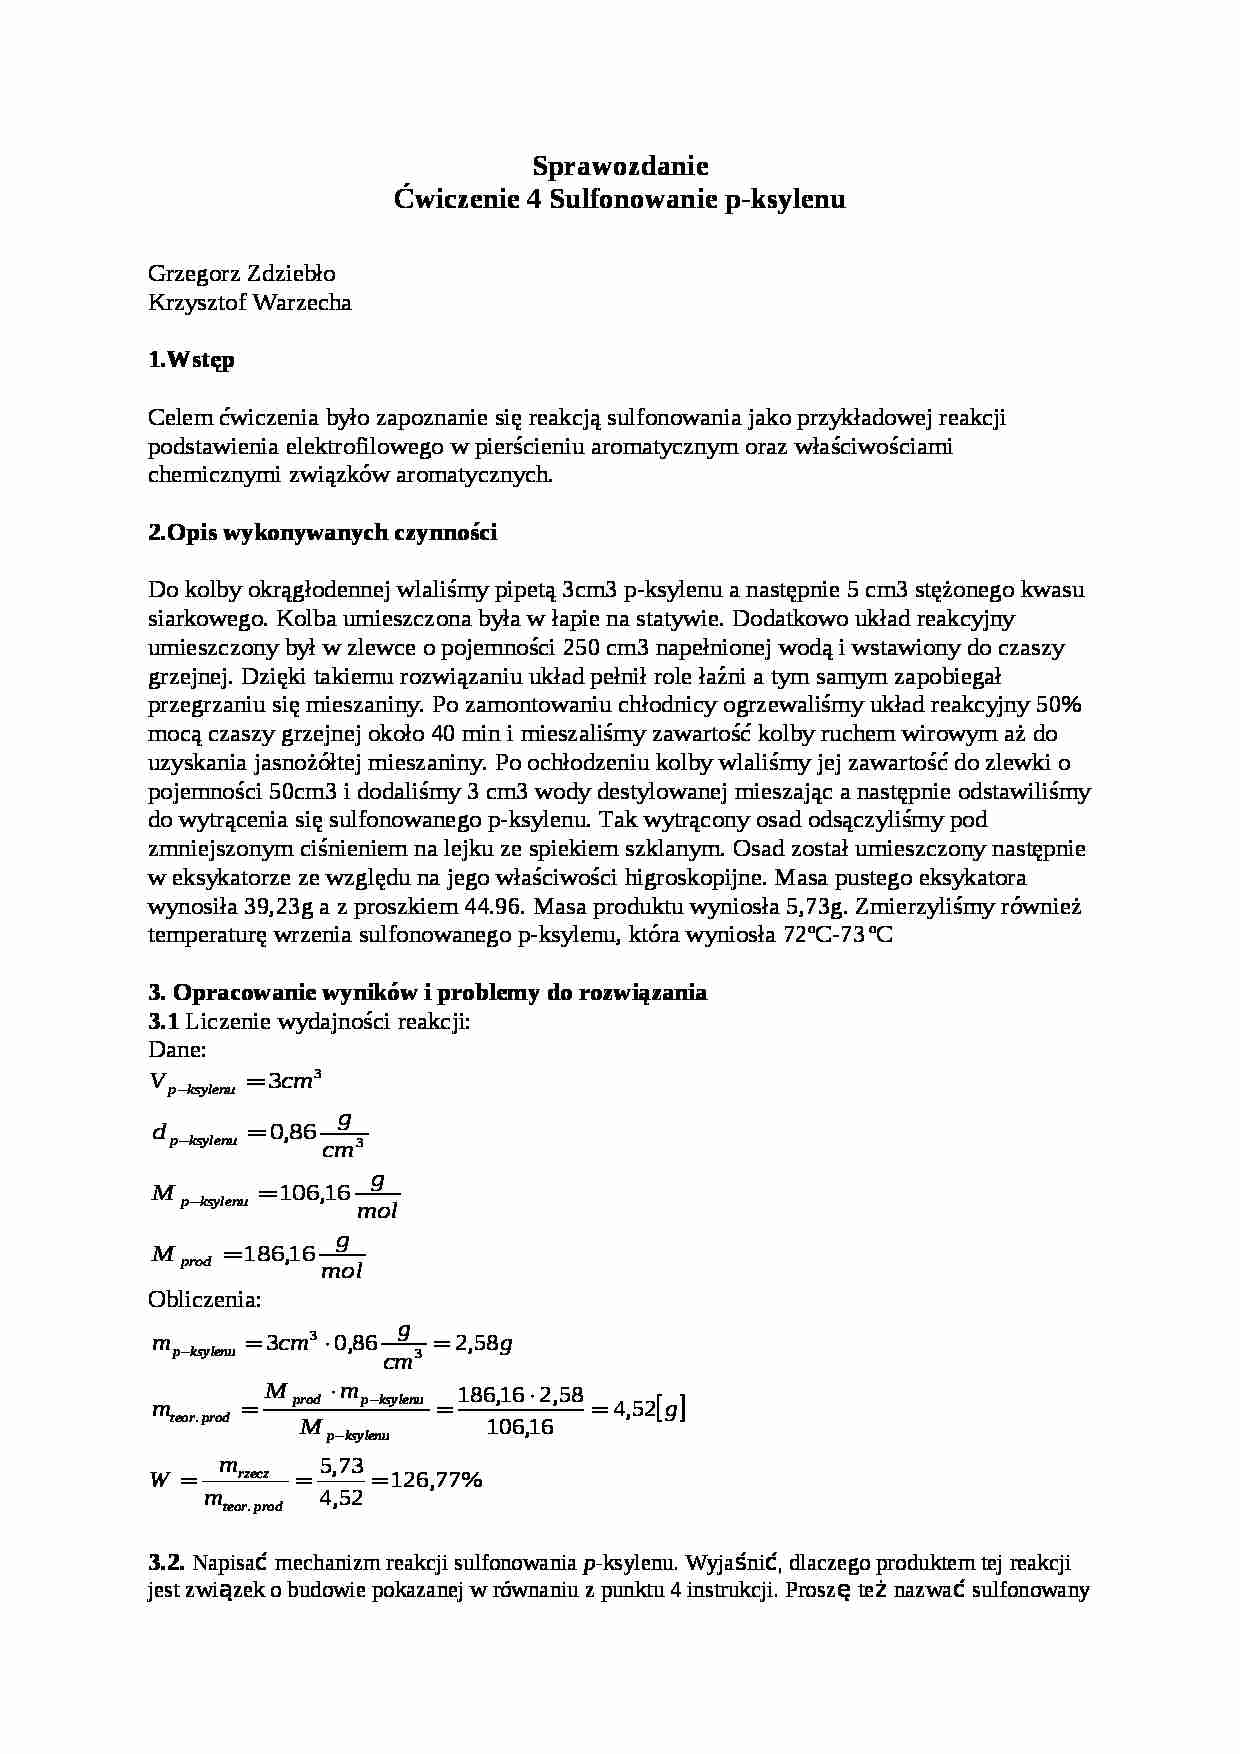 Chemia organiczna - sulfonowanie  - omówienie - strona 1